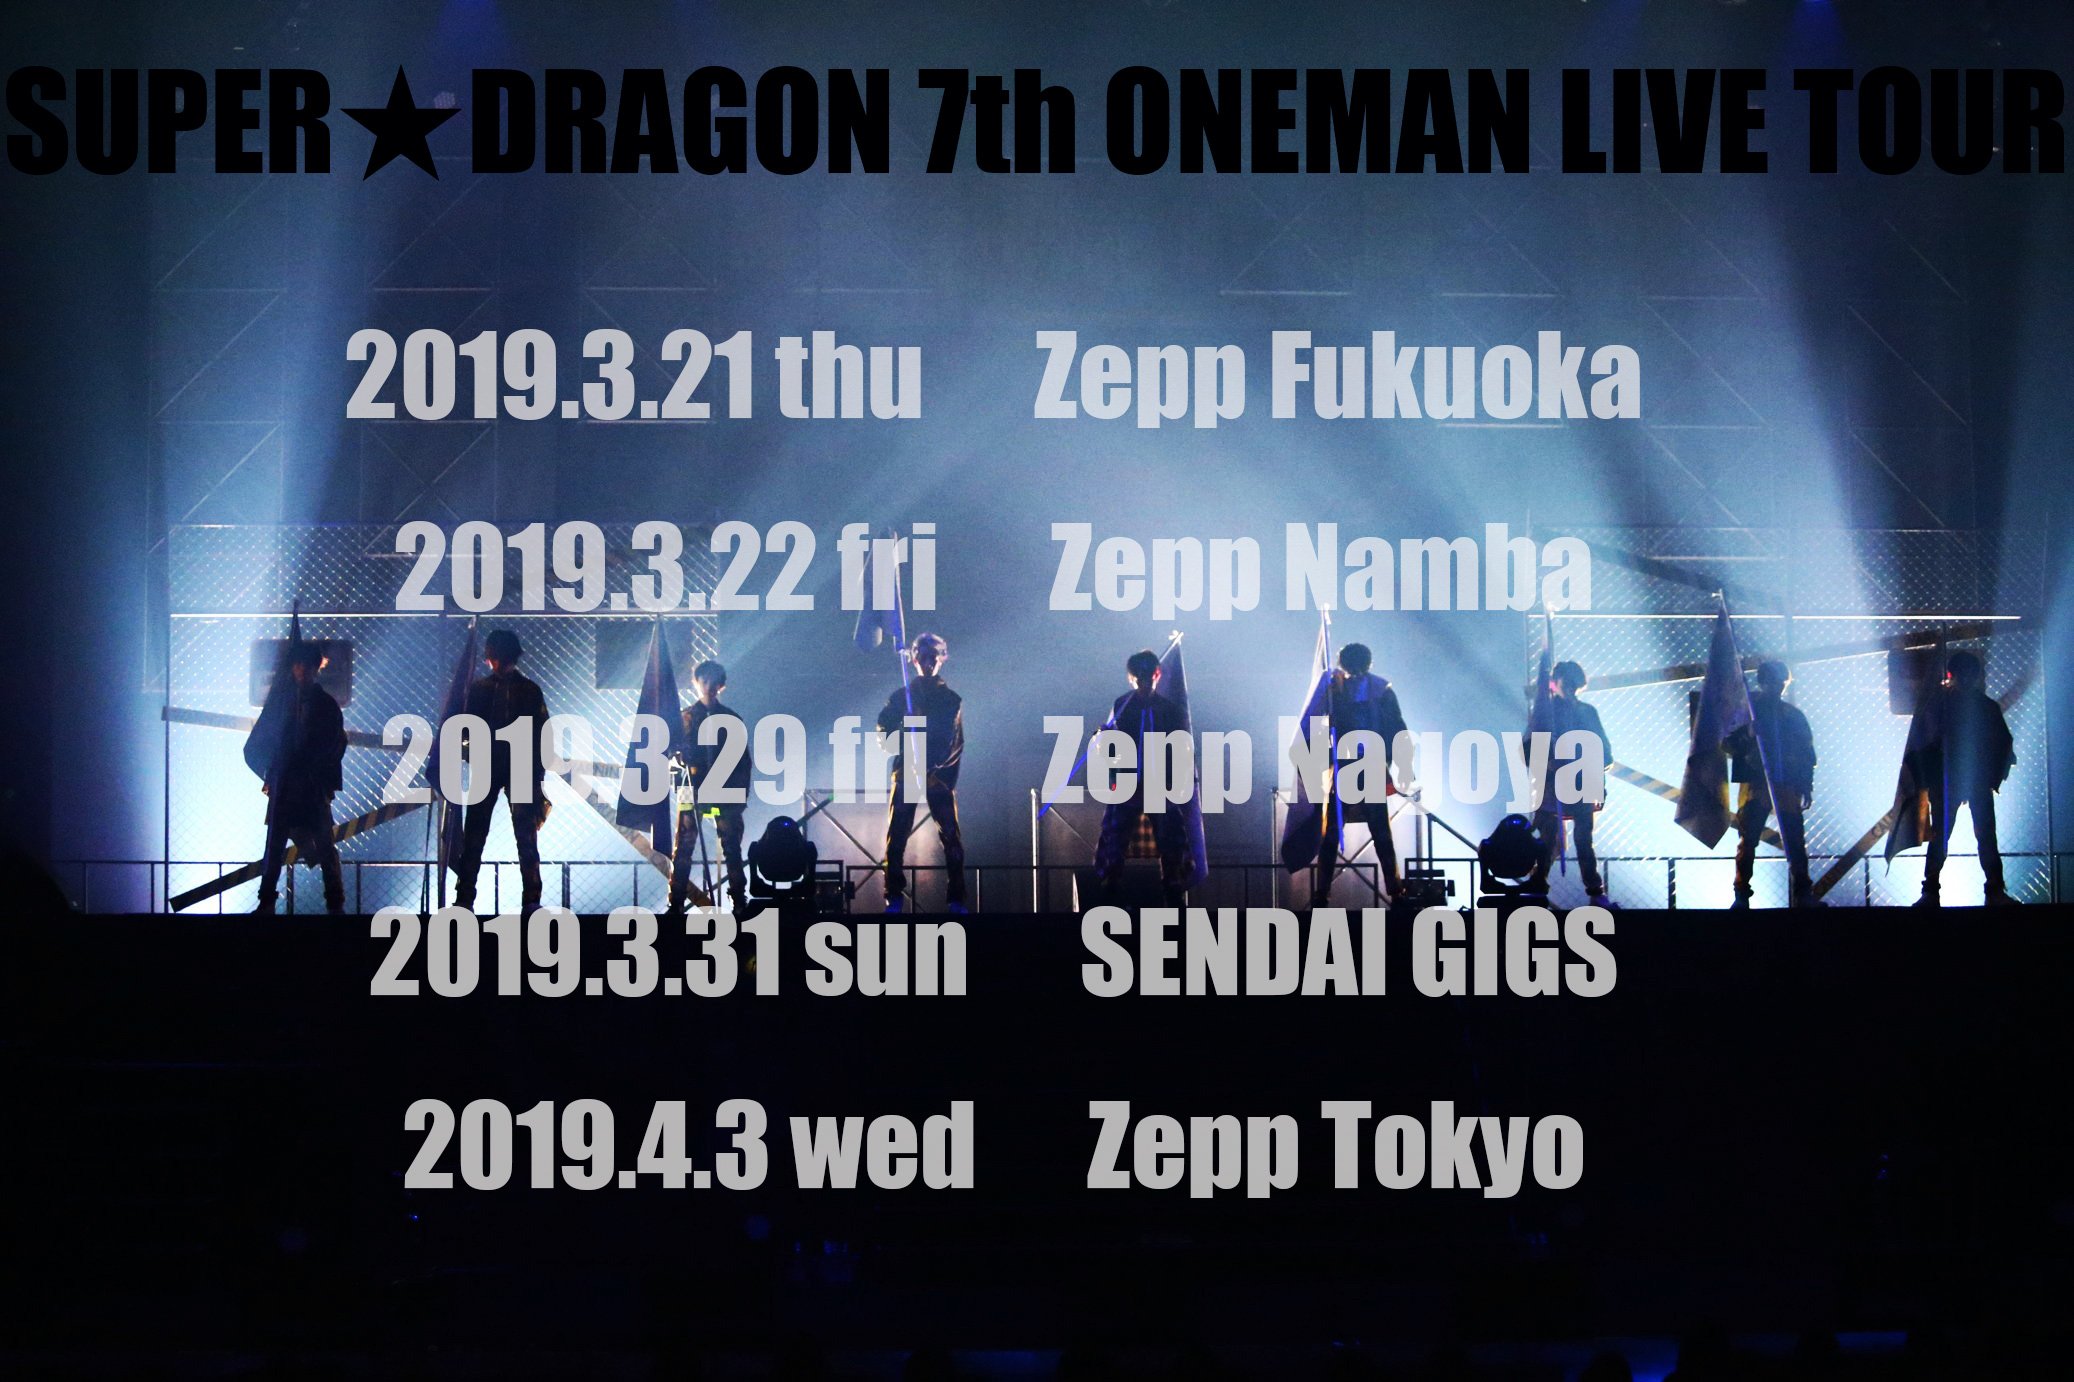 『SUPER★DRAGON LIVE TOUR 2019 -Emotions-